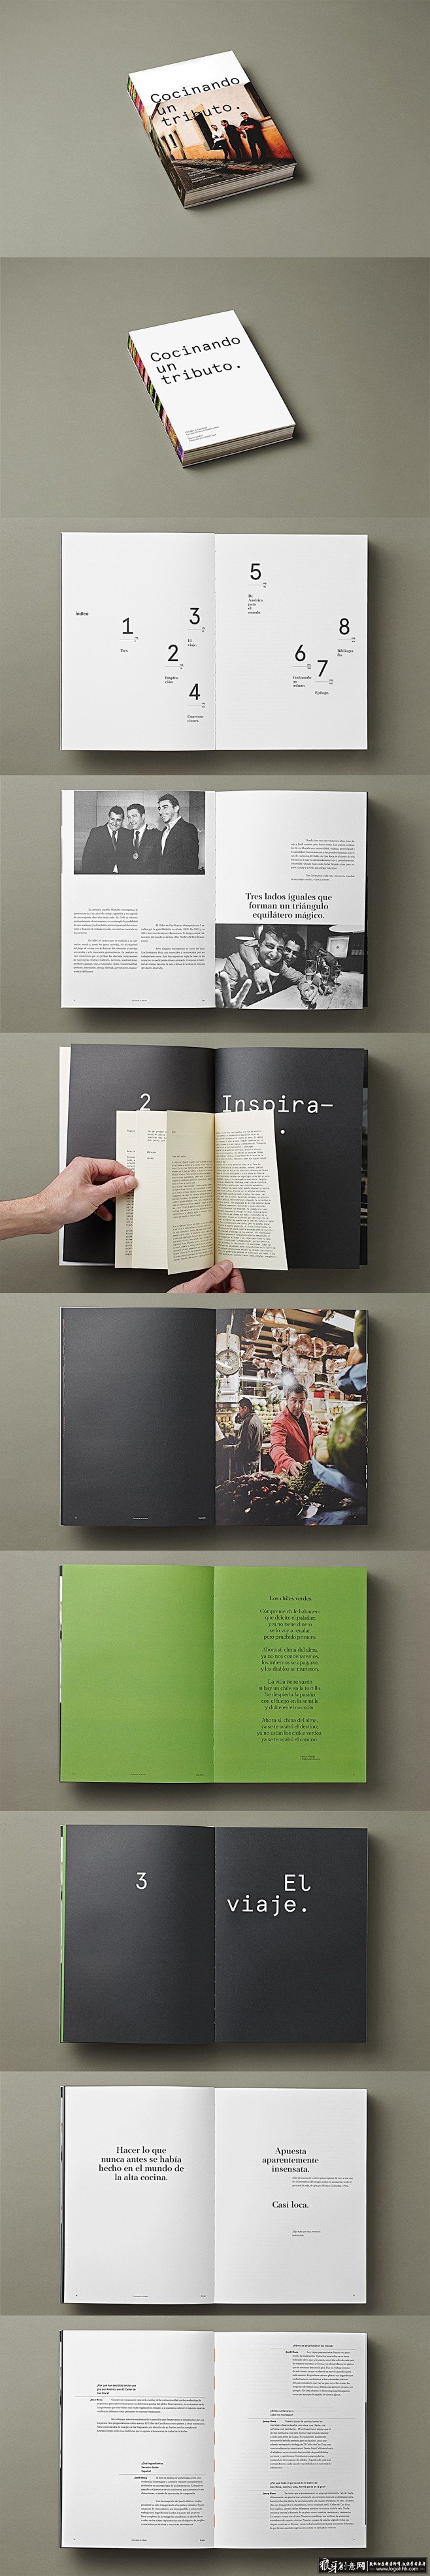 装帧/印刷 餐饮行业画册设计 创意餐饮画...